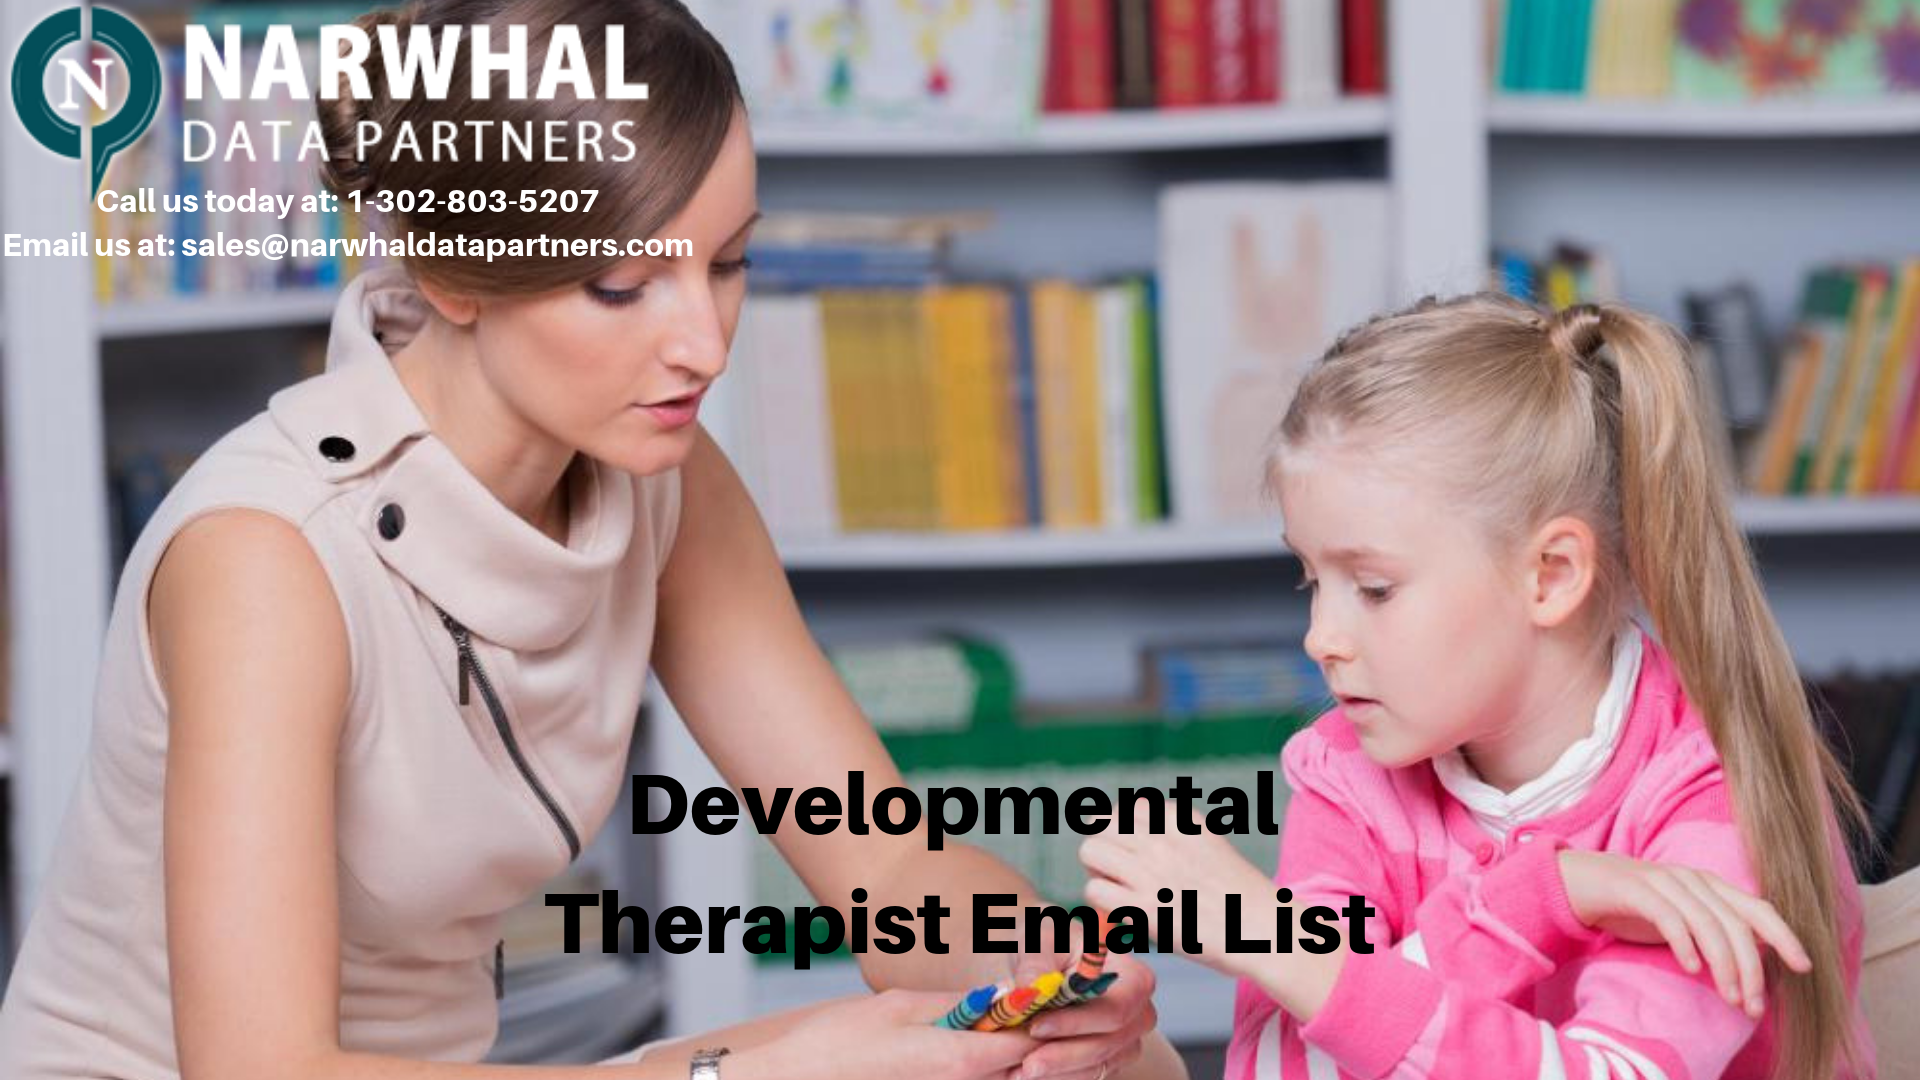 http://narwhaldatapartners.com/developmental-therapist-email-list.html